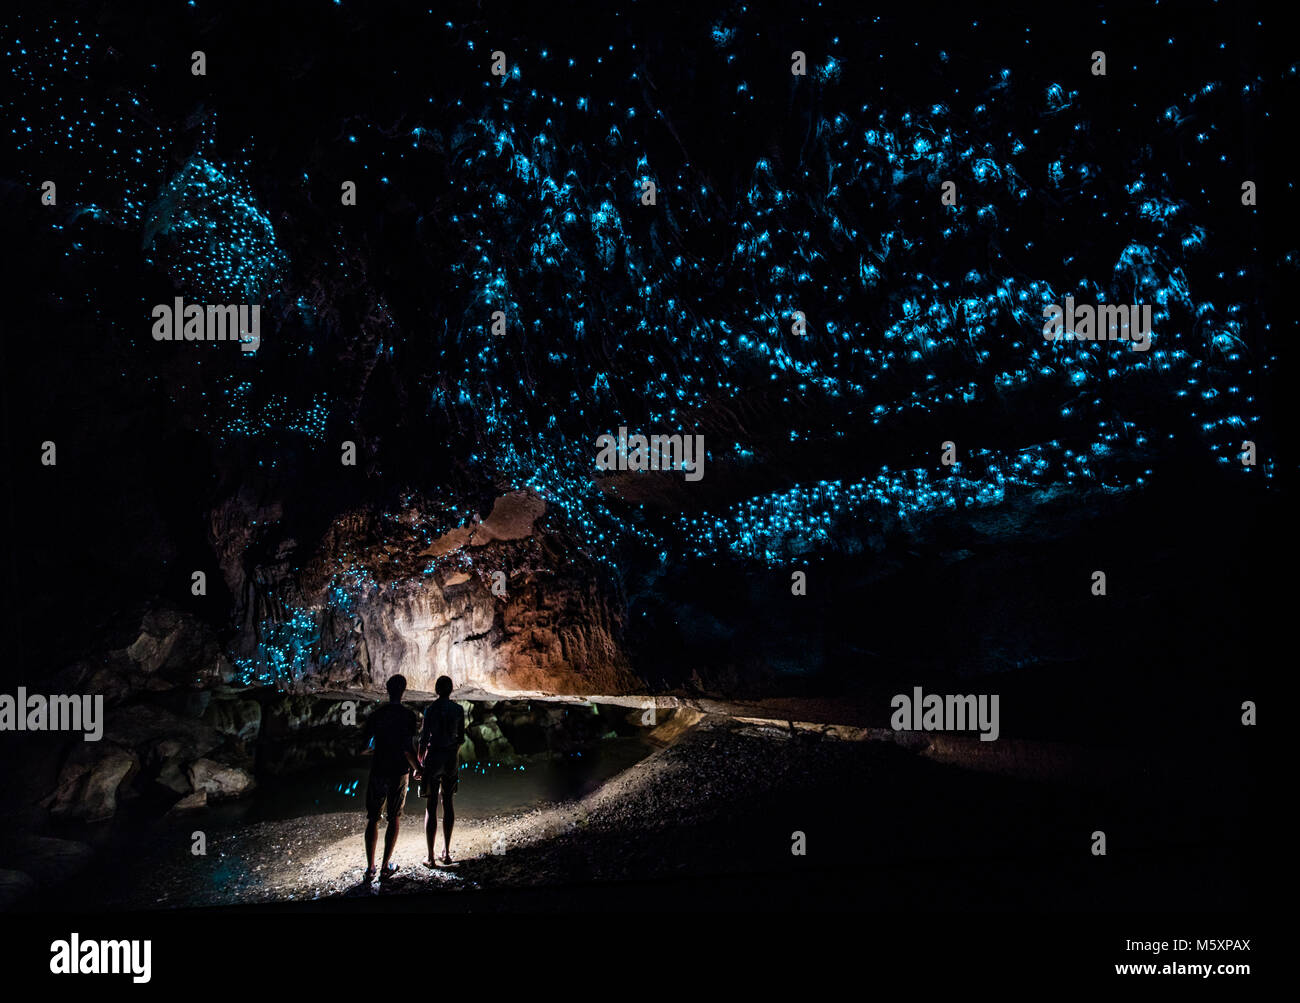 Paar stehen unter Himmel von Glühwürmchen in Waipu Caves, Neue Zaland Stockfoto